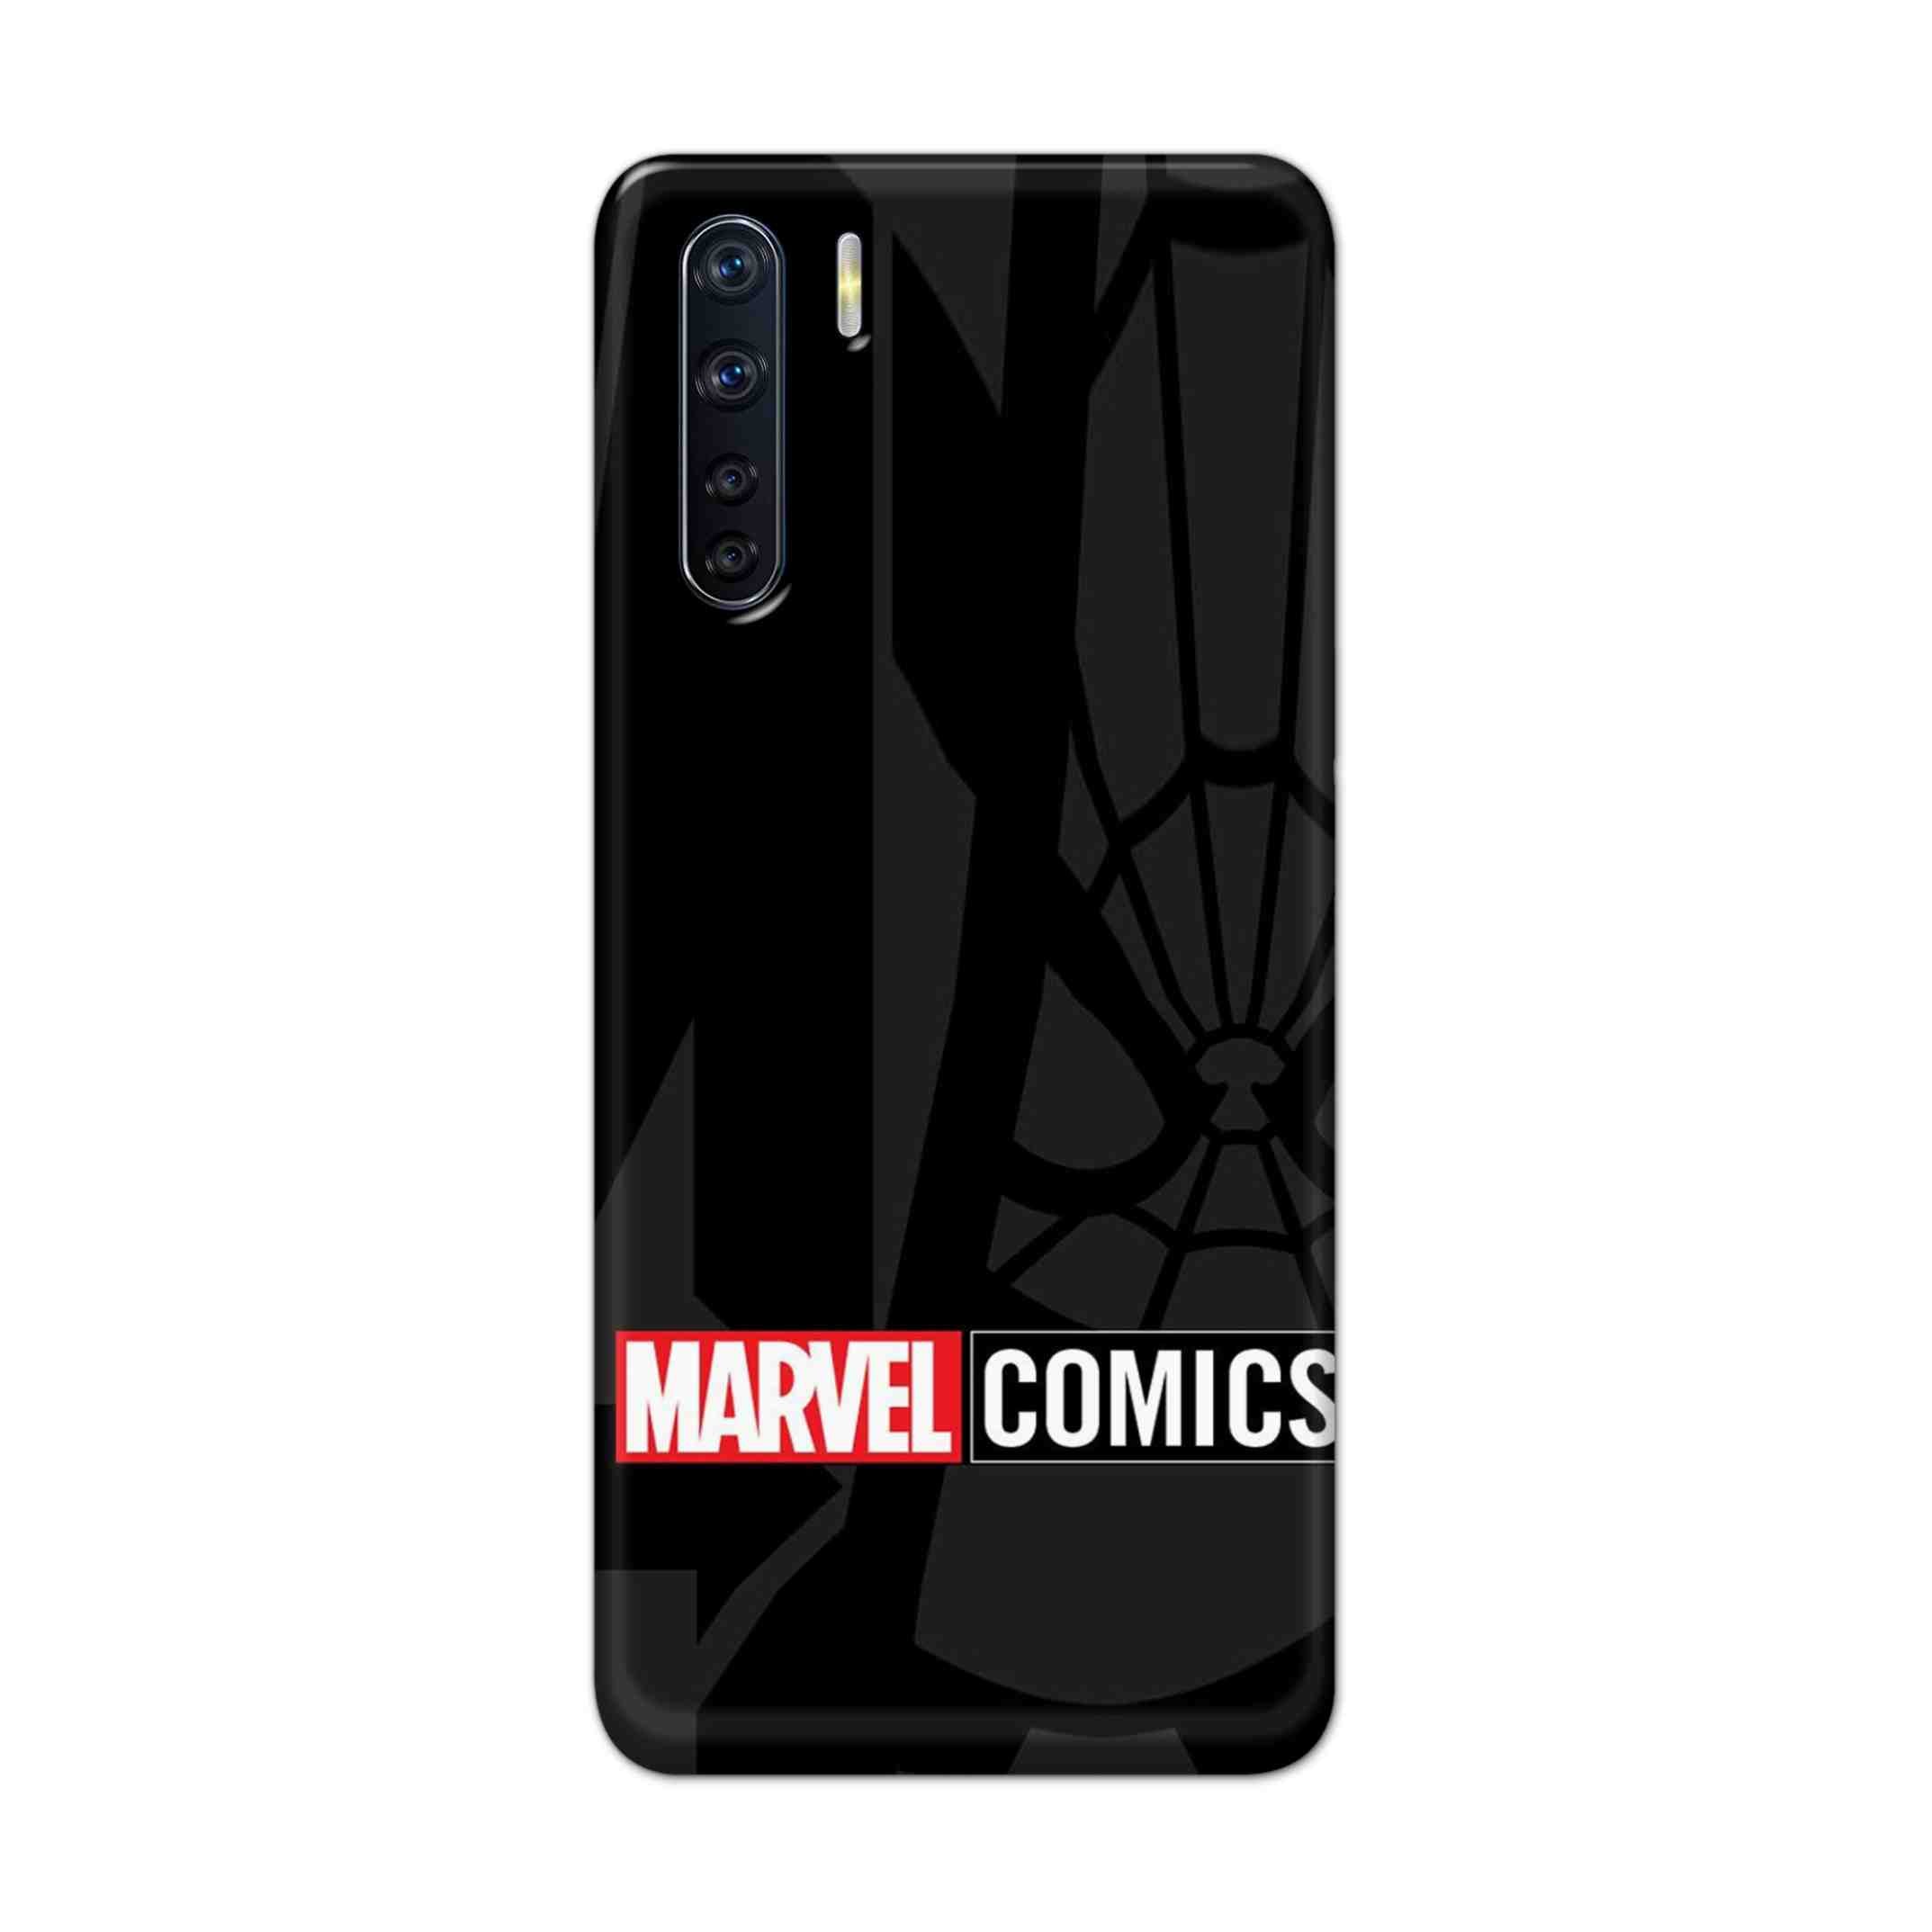 Buy Marvel Comics Hard Back Mobile Phone Case Cover For OPPO F15 Online